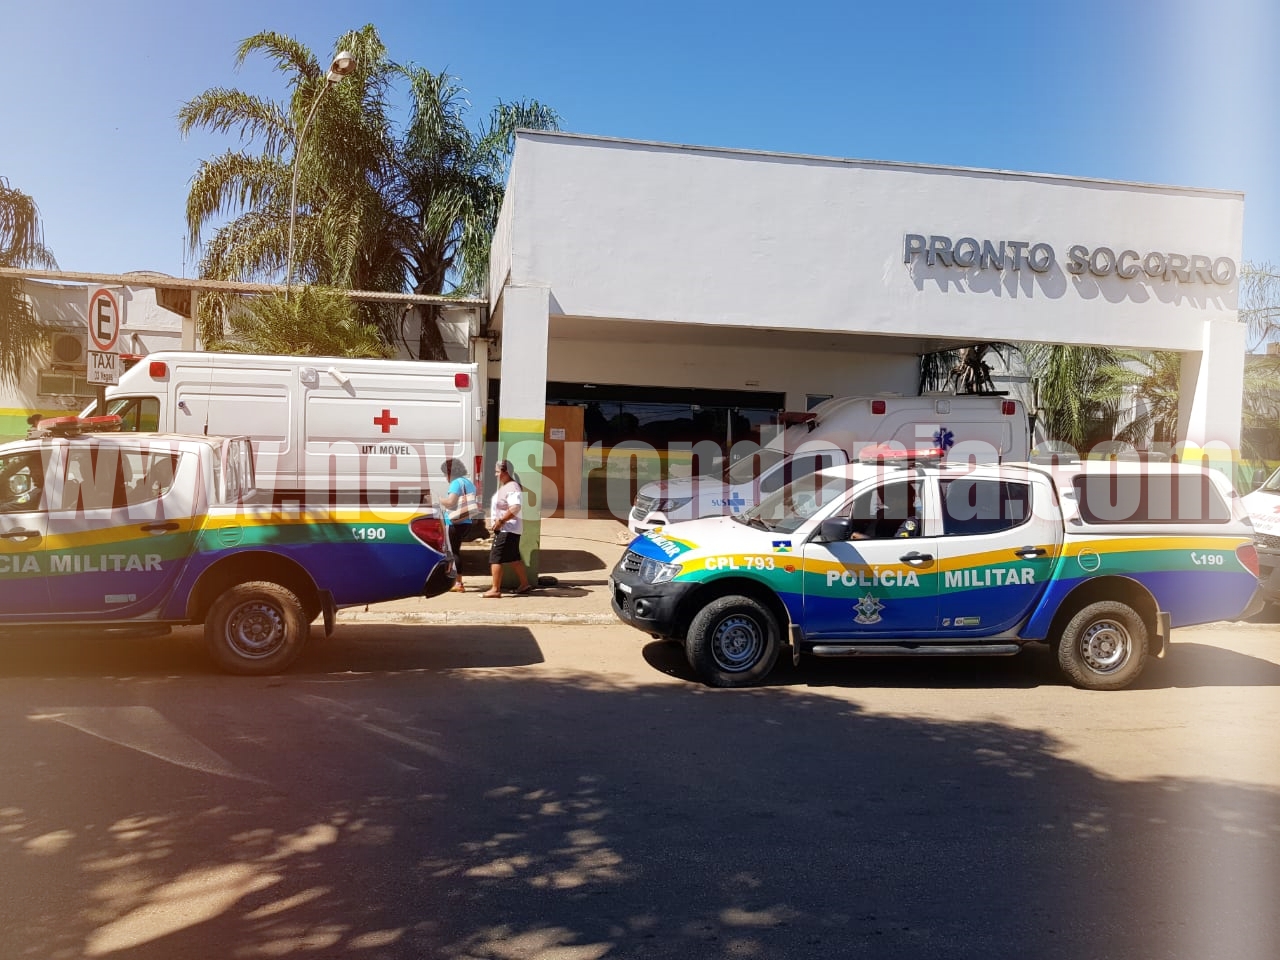 PARA SE DEFENDER DO MARIDO, MULHER PERFURA A BARRIGA DO ESPOSO COM GARGALO DE GARRAFA EM PORTO VELHO - News Rondônia